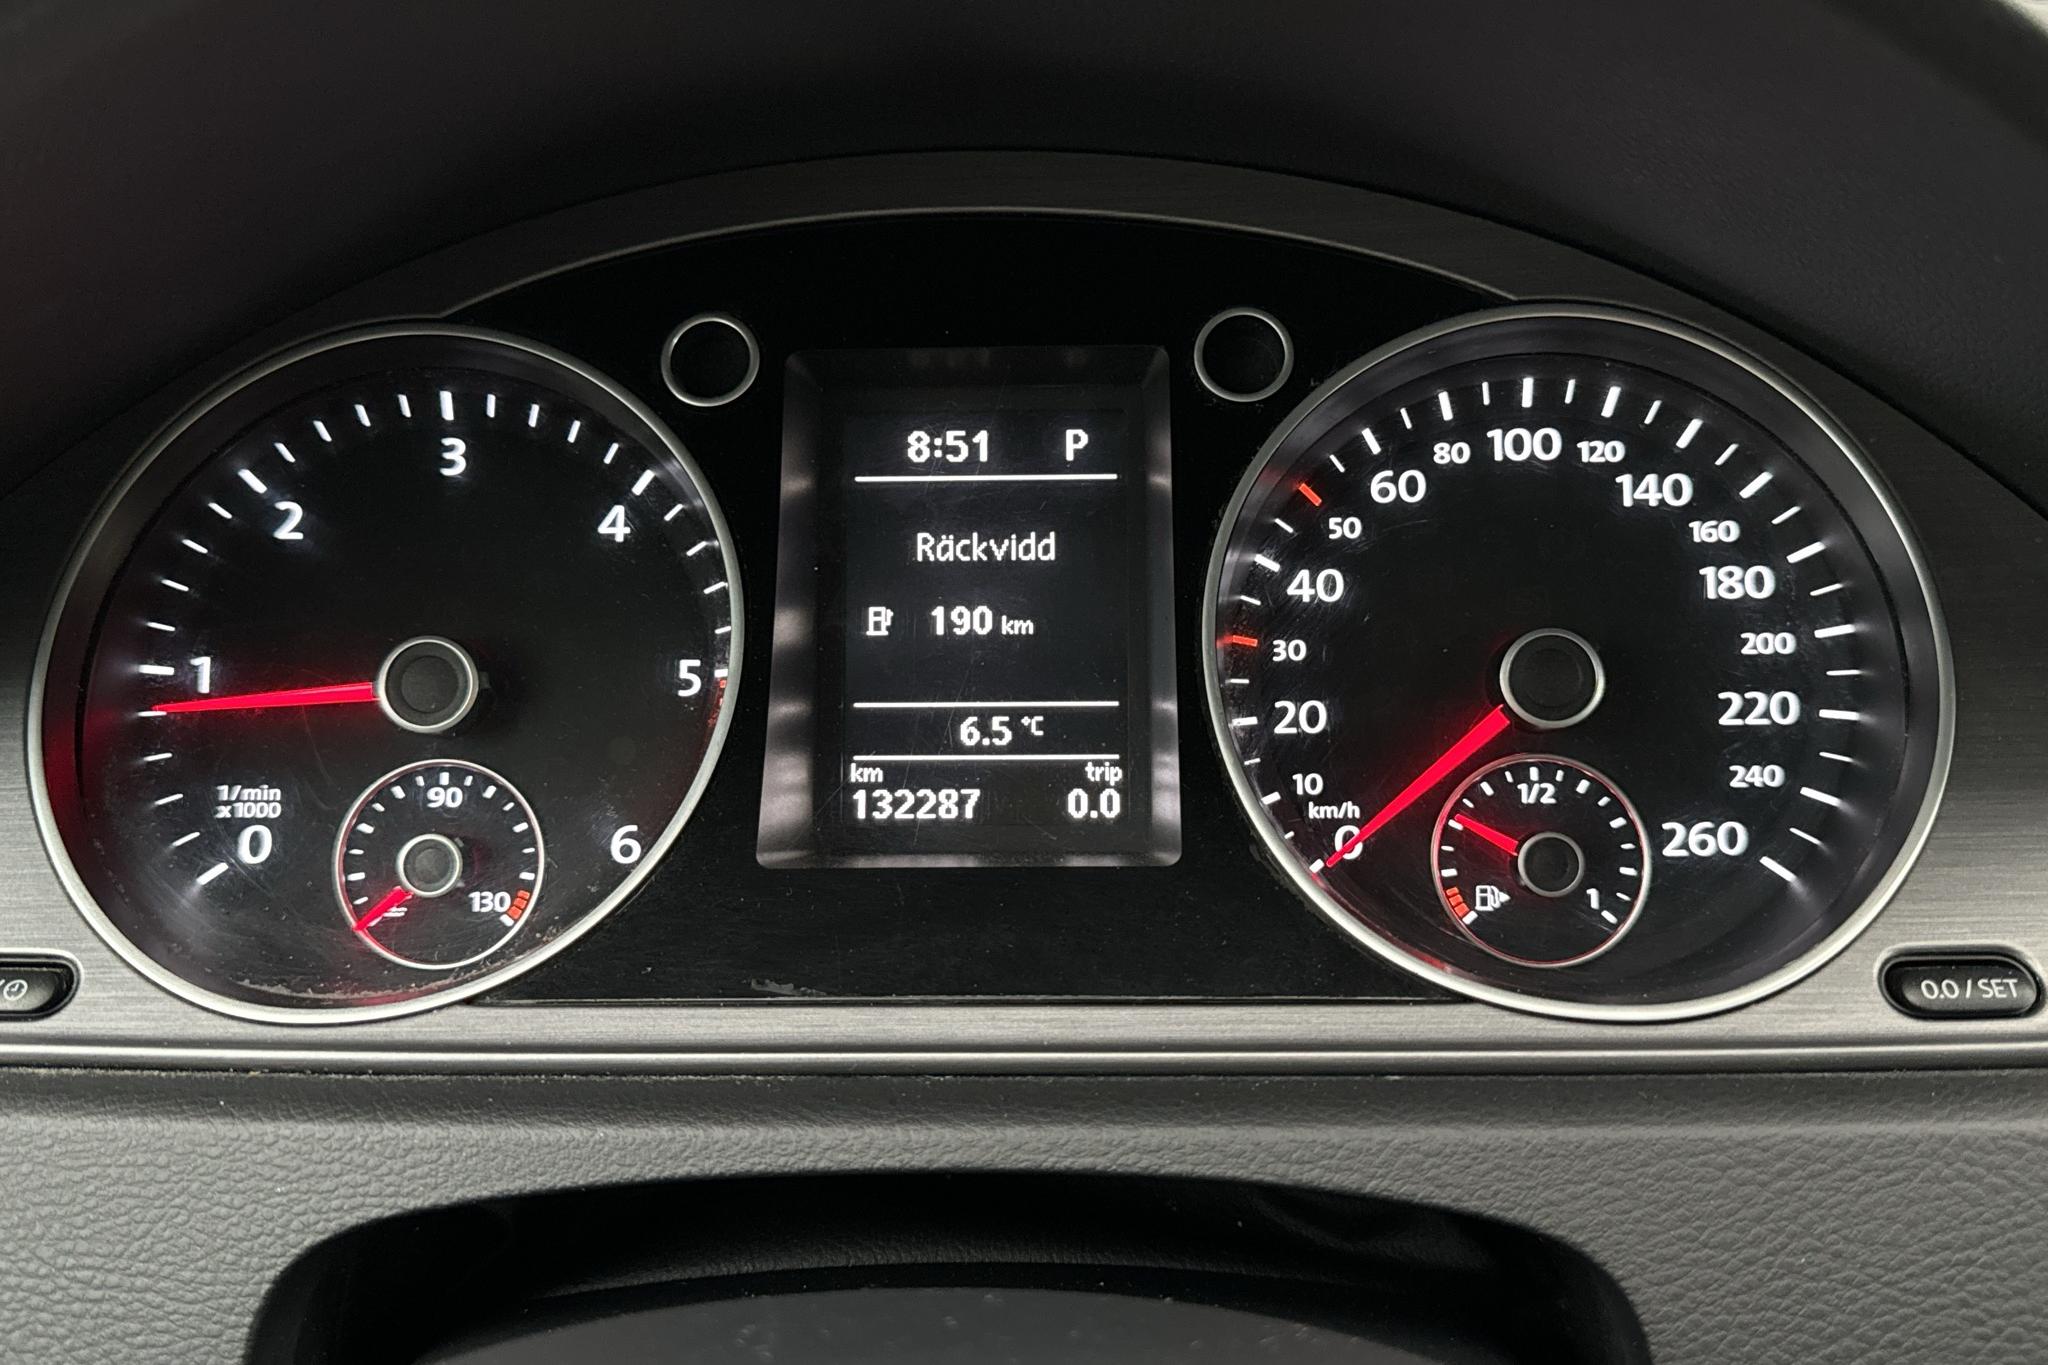 VW Passat 2.0 TDI BlueMotion Technology Variant 4Motion (177hk) - 132 290 km - Automaattinen - valkoinen - 2014